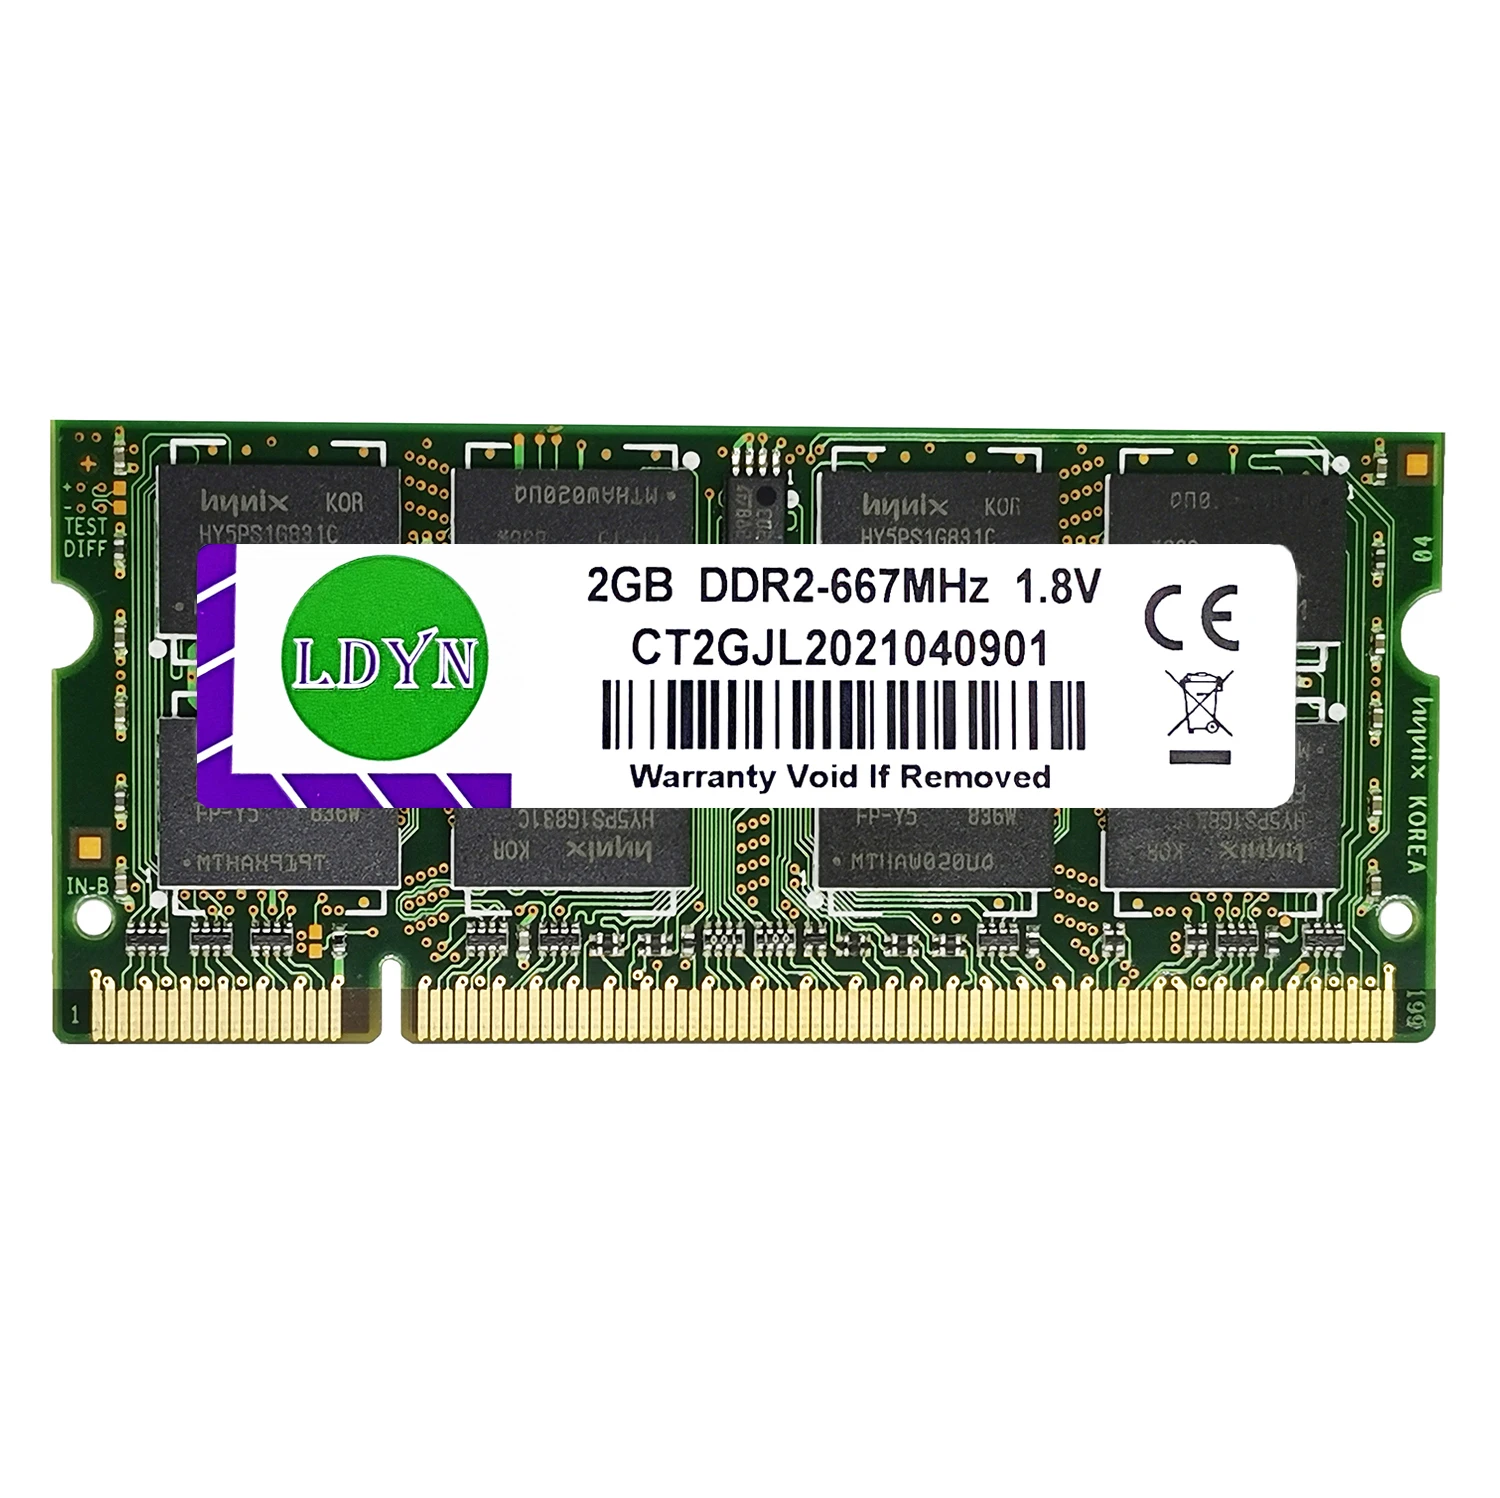 DDR2 DDR3 DDR4 8 ГБ 4 16 1600 2400 2666 2133 3200 DDR3L 204Pin SODIMM оперативная память для ноутбука RAM 260PIN ddr4